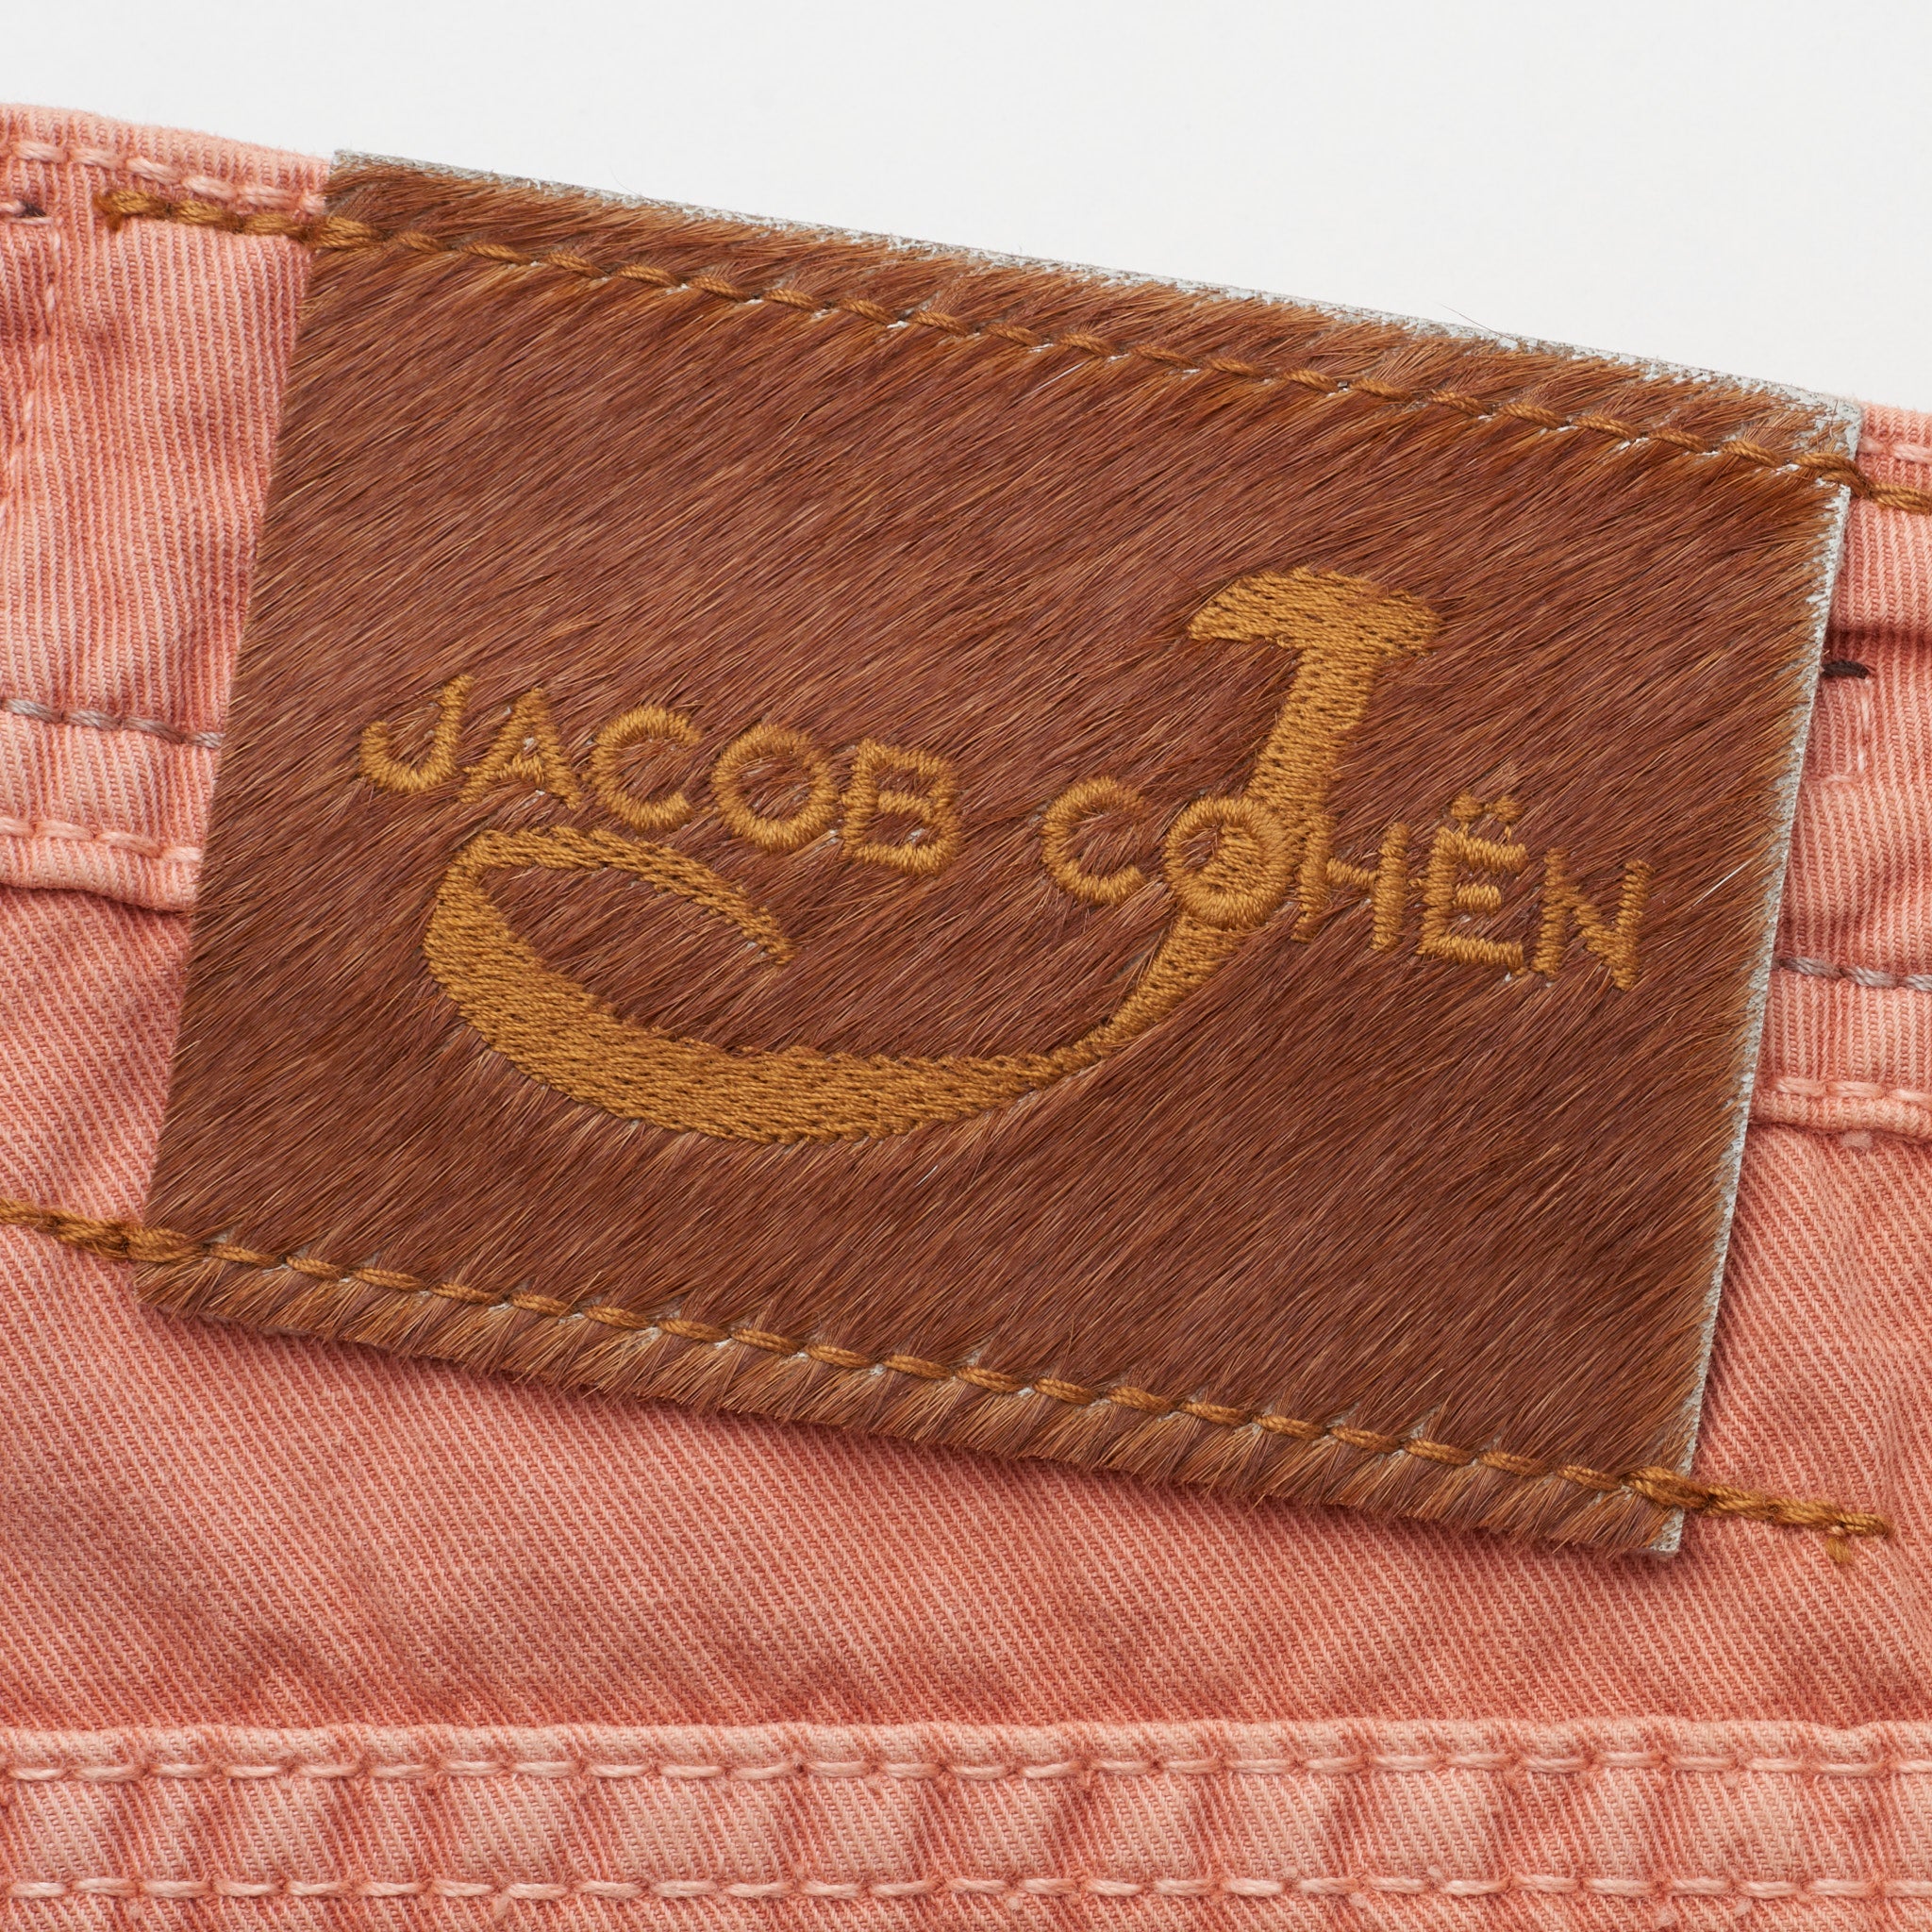 JACOB COHEN J688 Salmon Cotton-Linen Slim Fit Jeans Pants NEW US 32